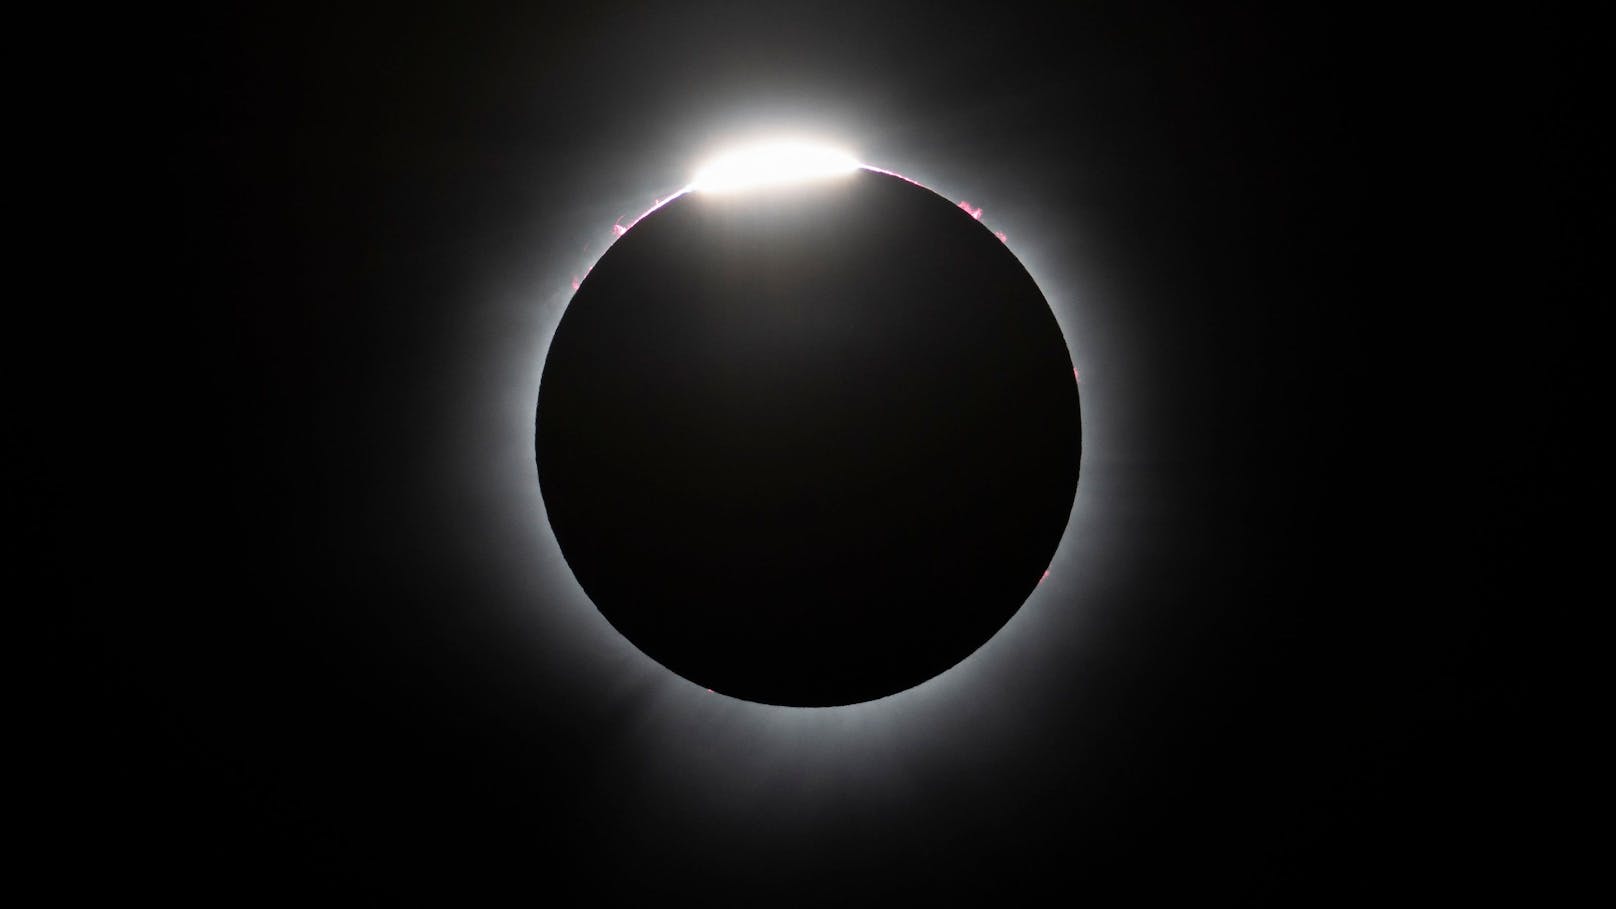 Die totale Sonnenfinsternis, bei der sich der Mond genau zwischen Erde und Sonne schiebt und die Sonne vollständig verdeckt, lockte Unzählige ins Freie.